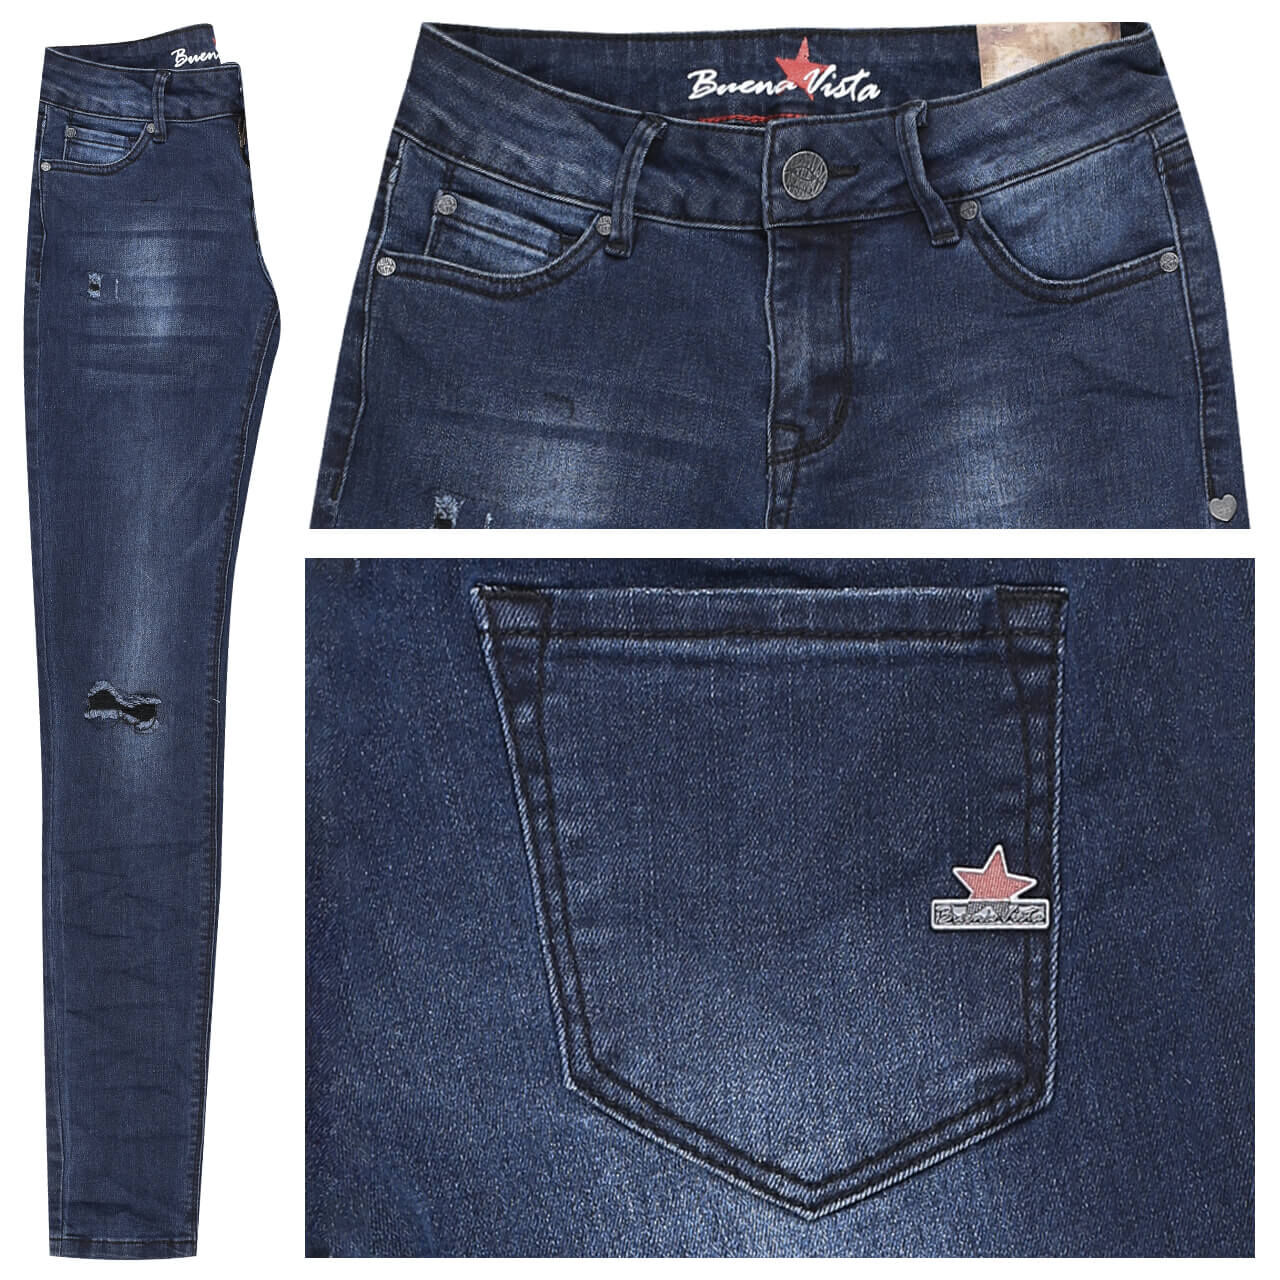 Buena Vista Jeans Italy Stretch Denim für Damen in Dunkelblau mit Destroyed-Effekten, FarbNr.: 2398